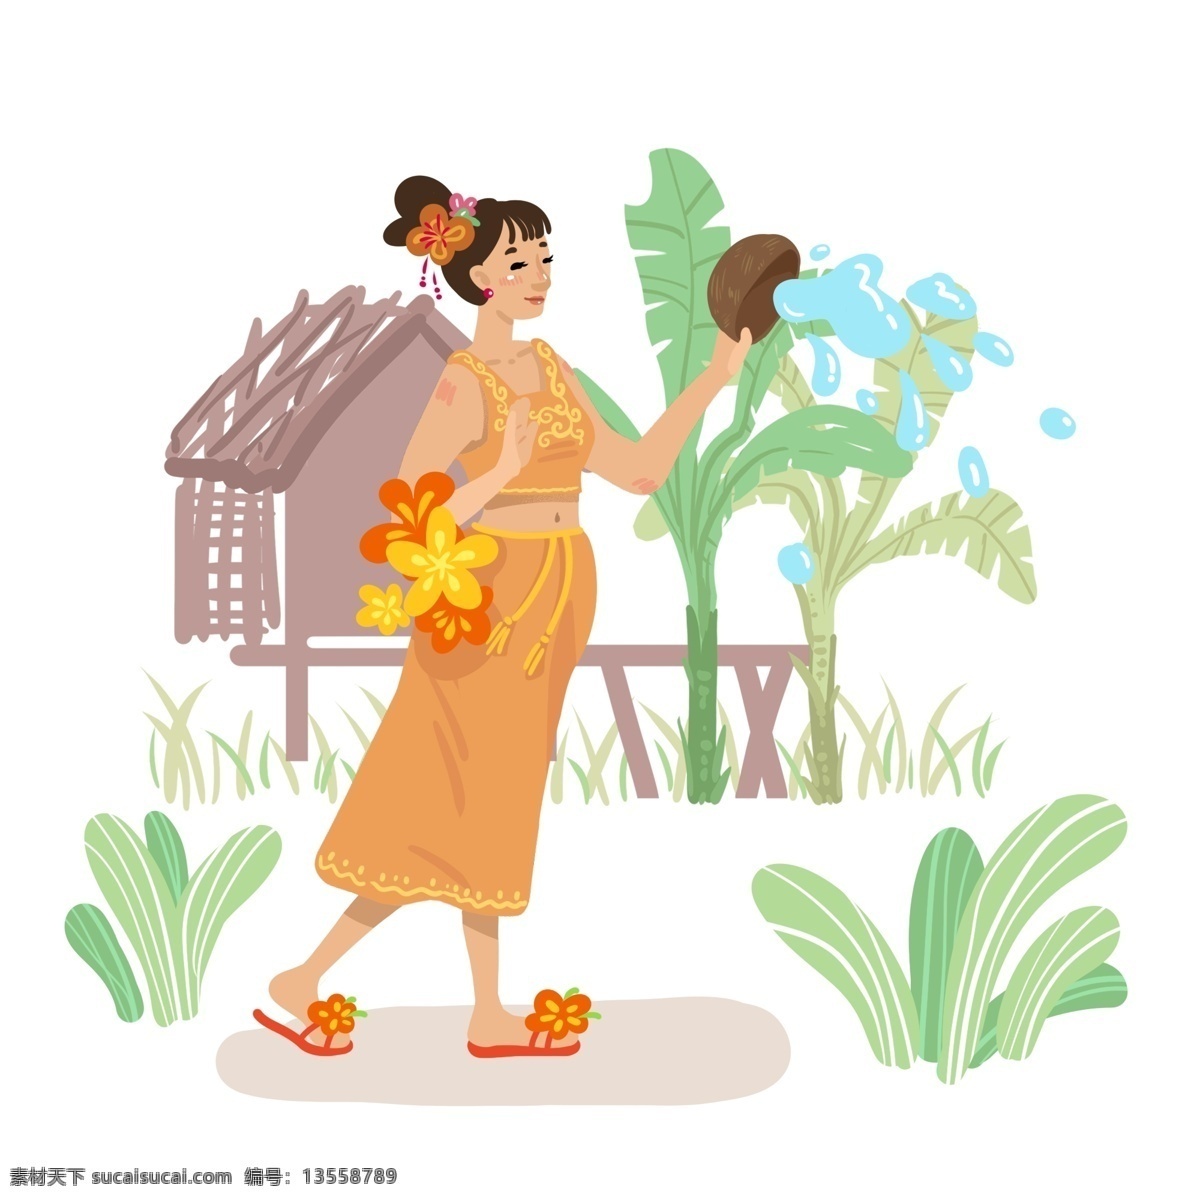 傣族 泼水节 女孩 人物 场景 云南 民族 泰国 宋干节 热带 亚热带 特色 服饰 花卉 节日 女人